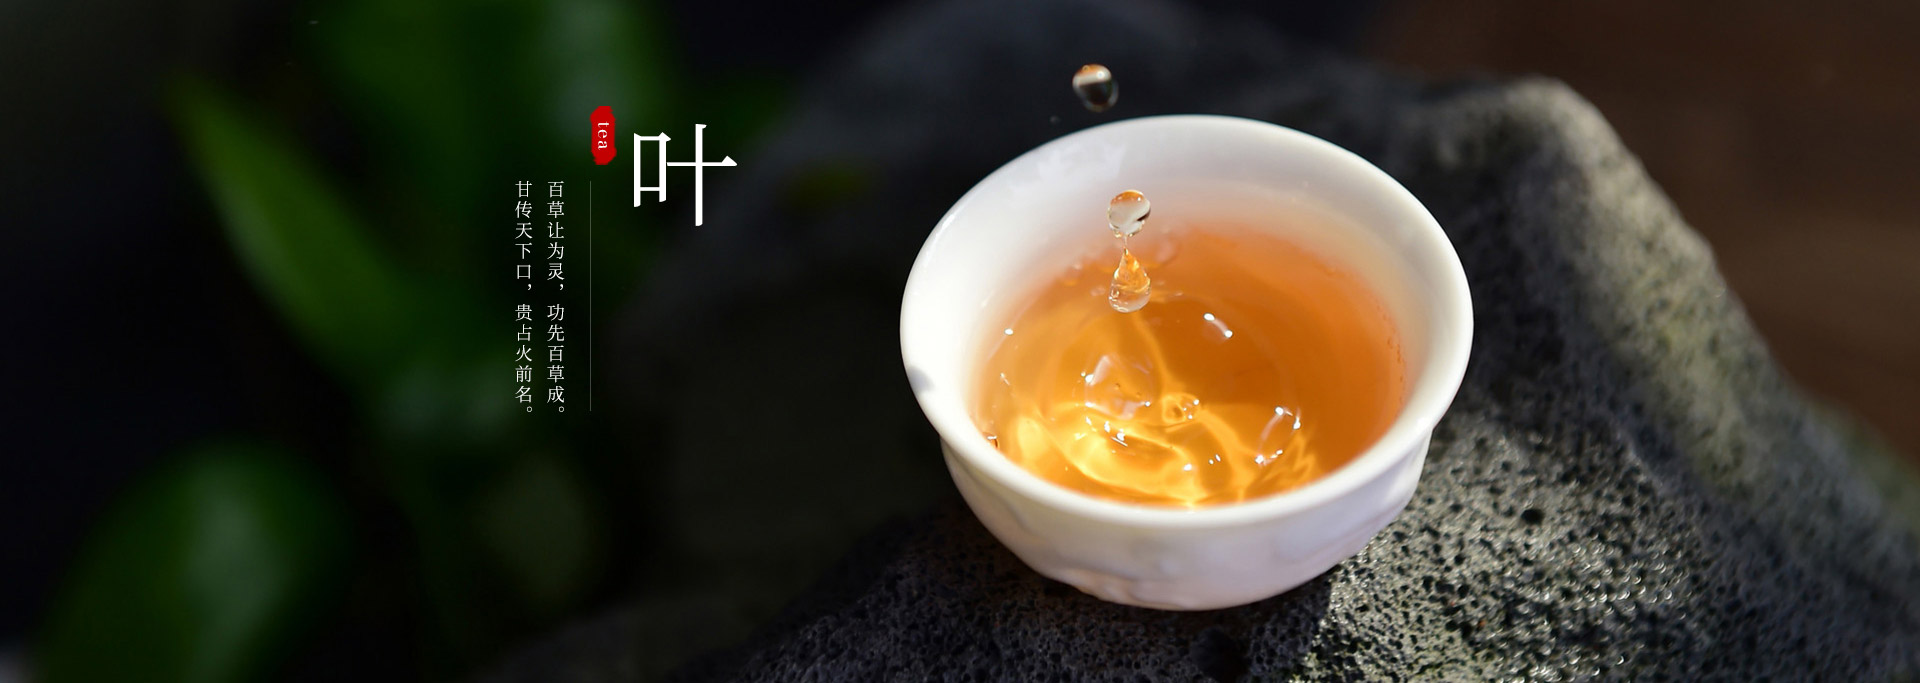 桂林茶叶专卖企业网站